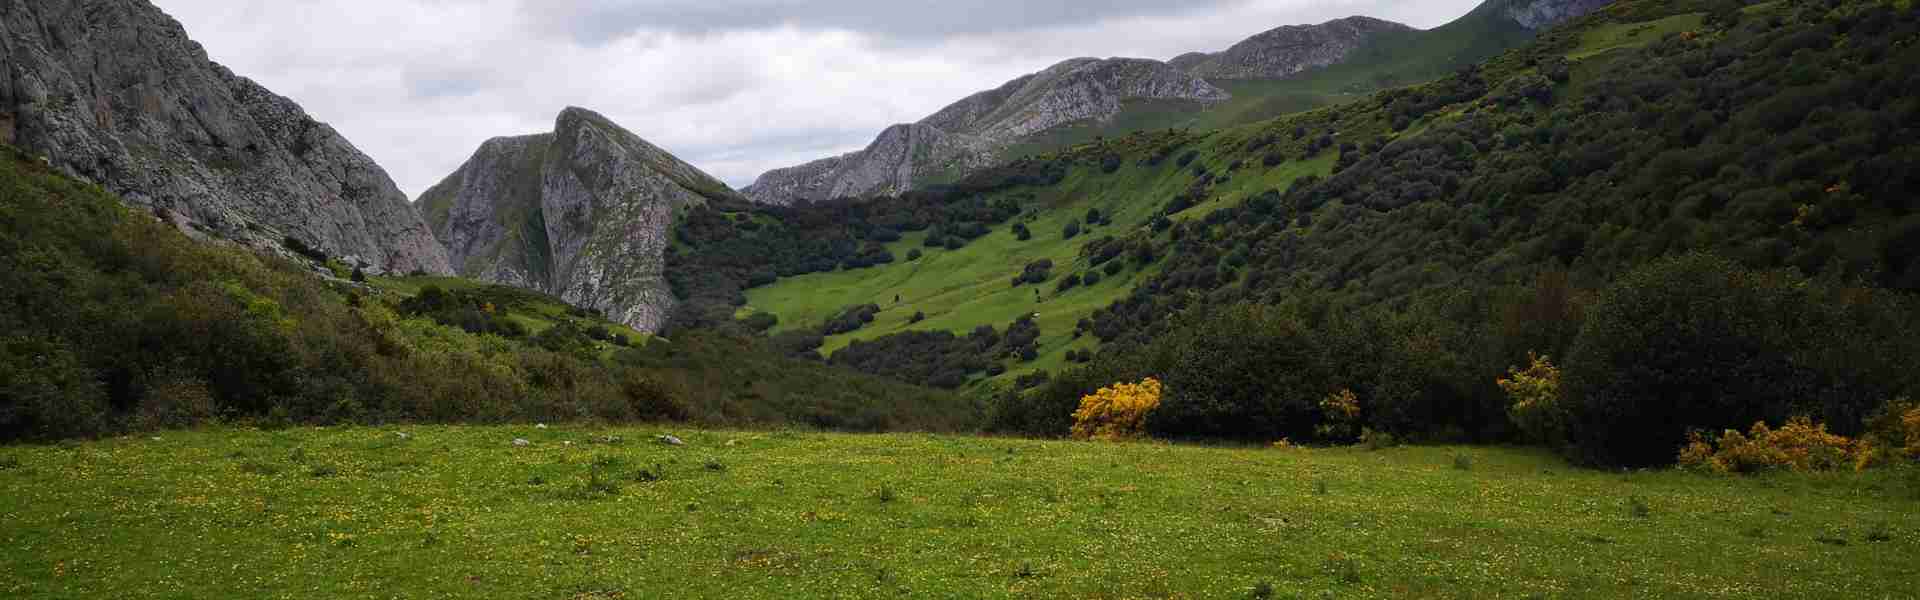 Best Hikes in Asturias - Puerto de Agüeria